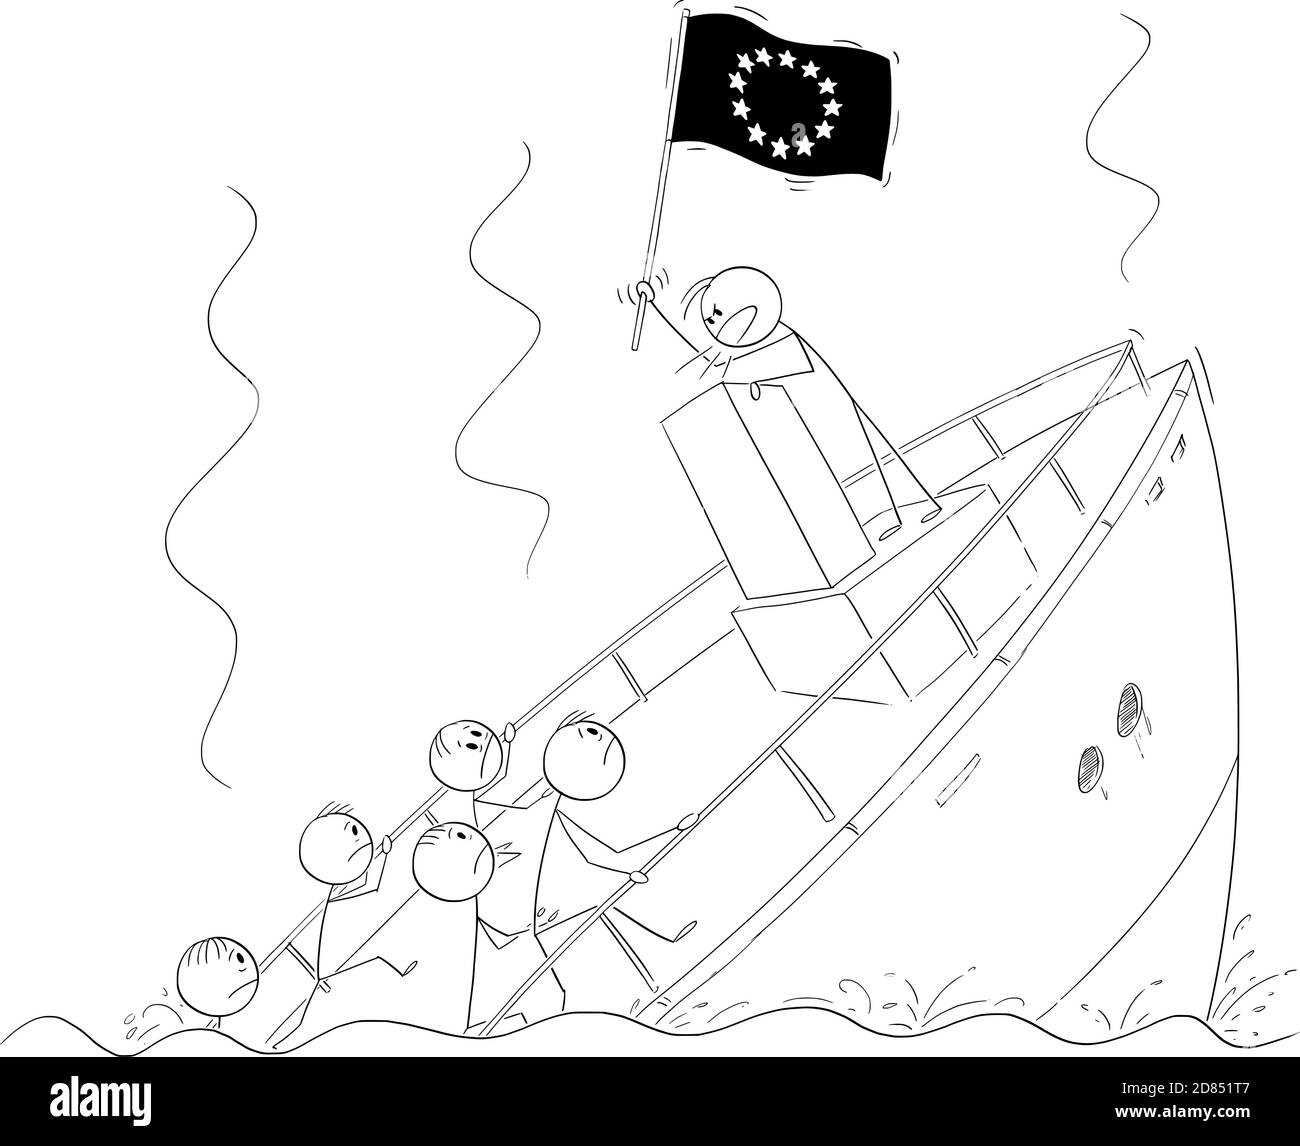 Figura del cartone vettoriale illustrazione di un politico o di un leader che detiene la bandiera dell'UE o dell'Unione europea e che parla o ha parlato, in piedi dietro il leggio durante il naufragio della nave ignorando la crisi e la realtà. Illustrazione Vettoriale